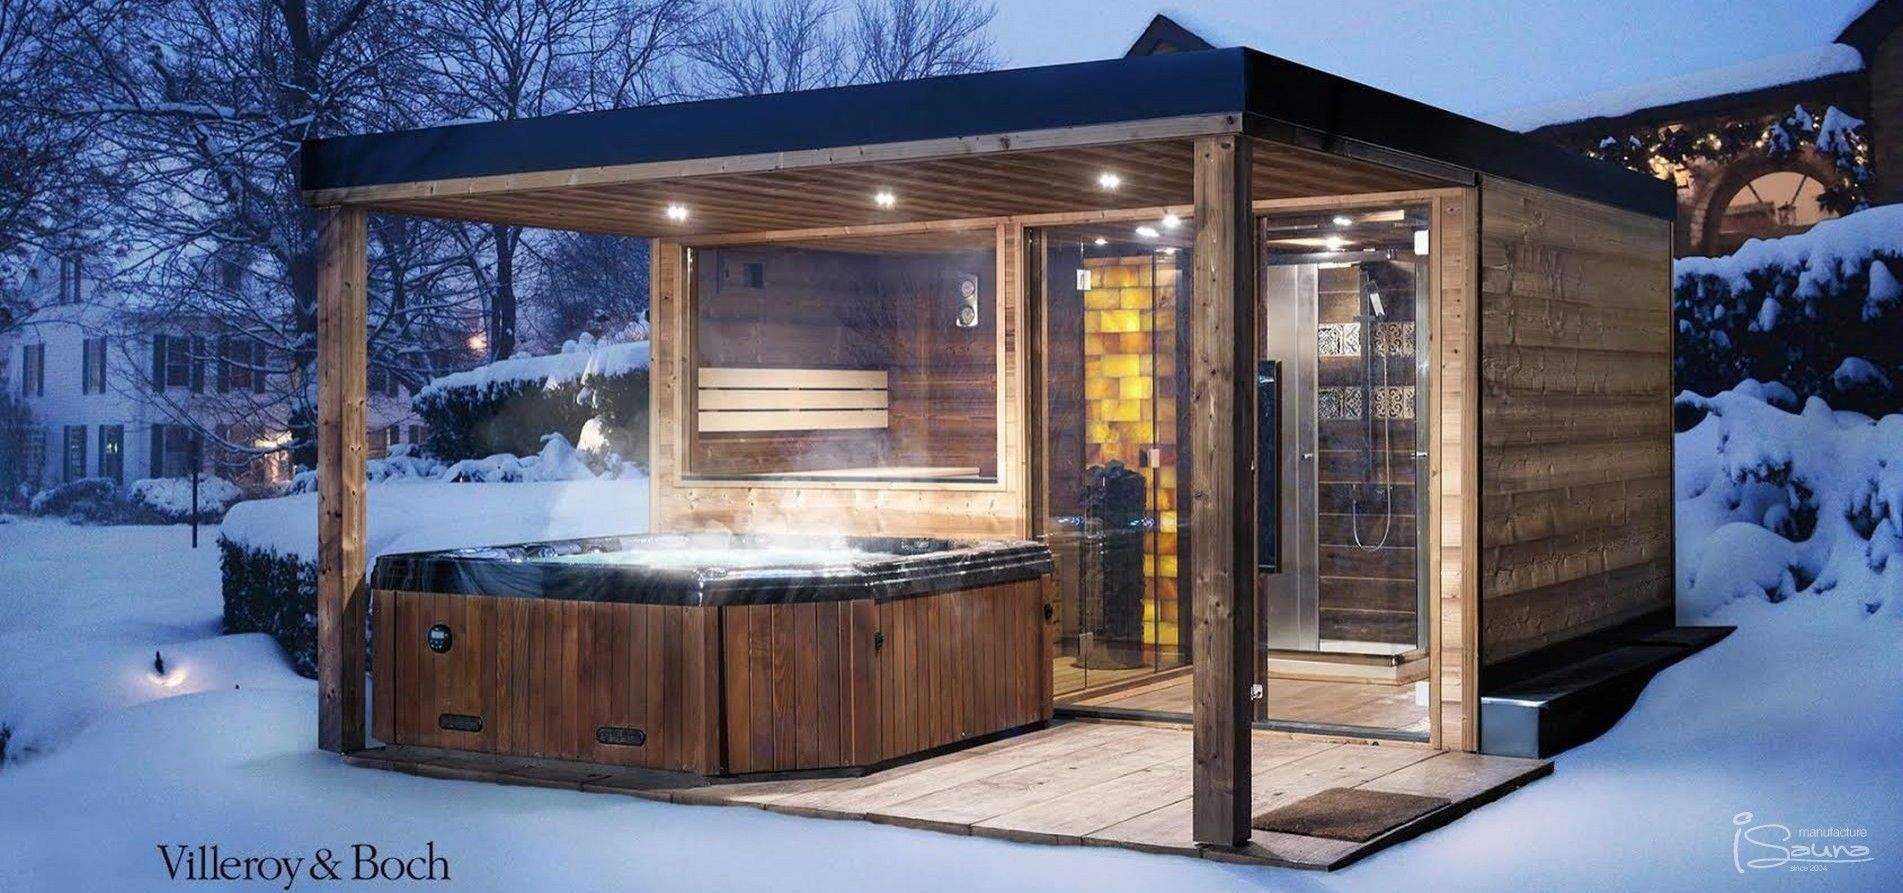 sauna im garten luxus garden sauna house with whirlpool in 2019 of sauna im garten